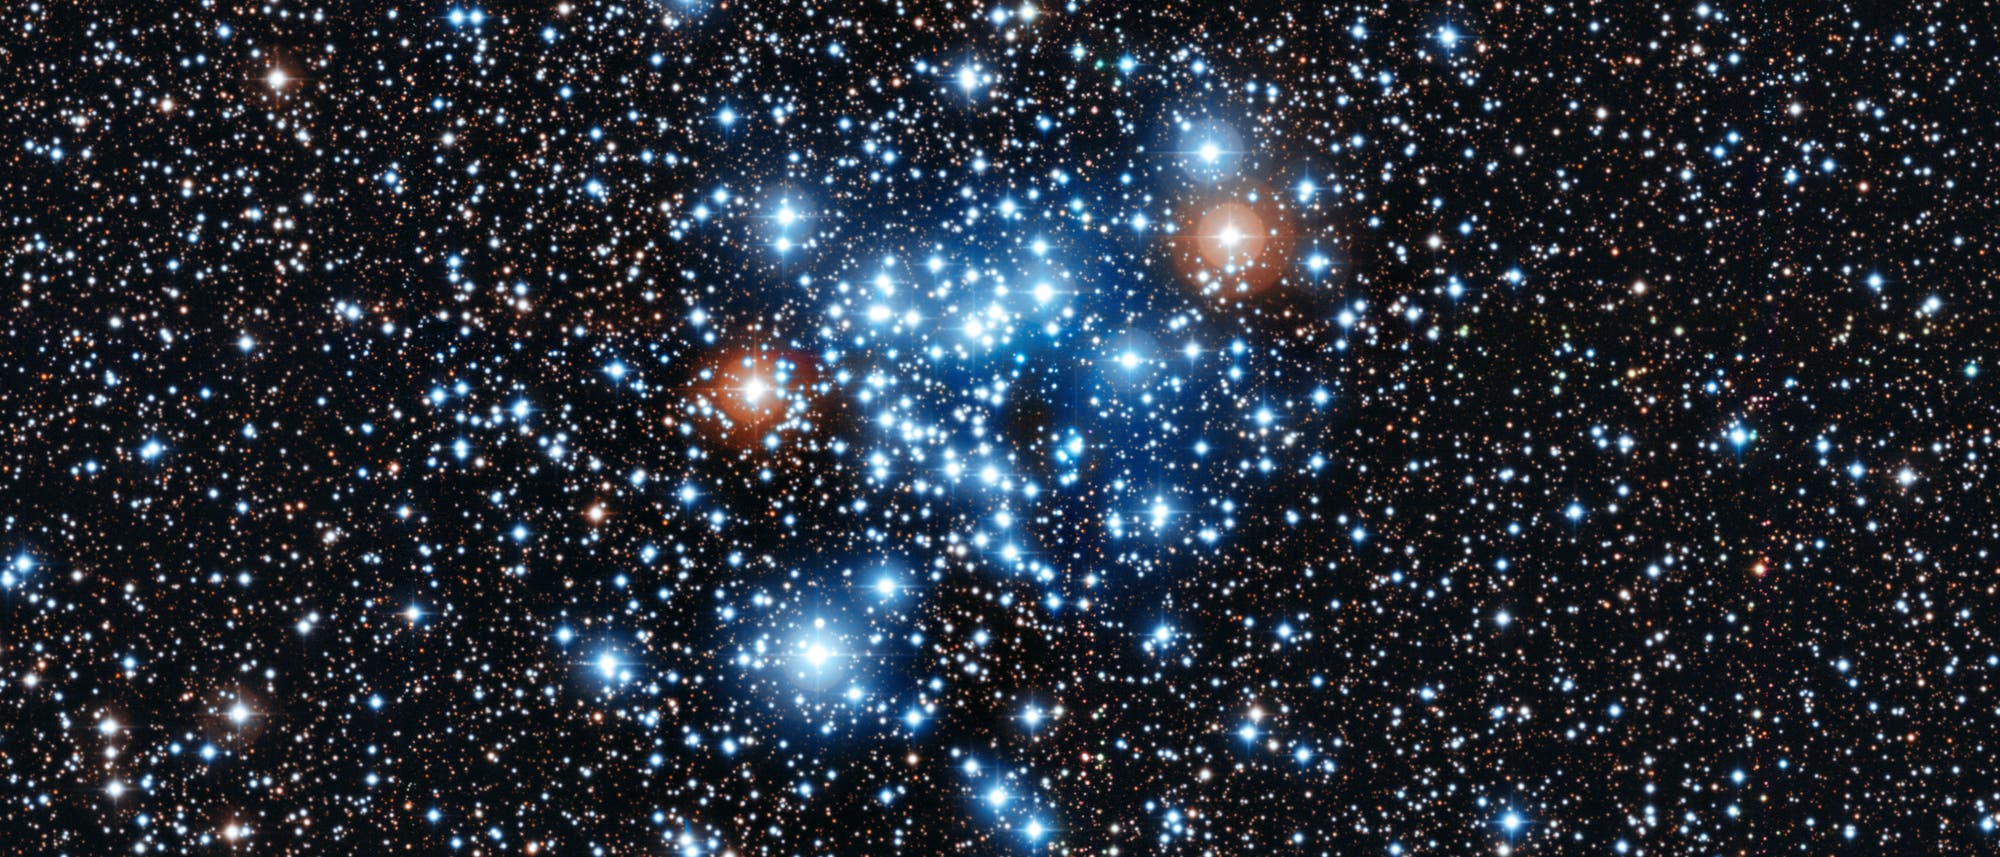 Der offene Sternhaufen NGC 3766